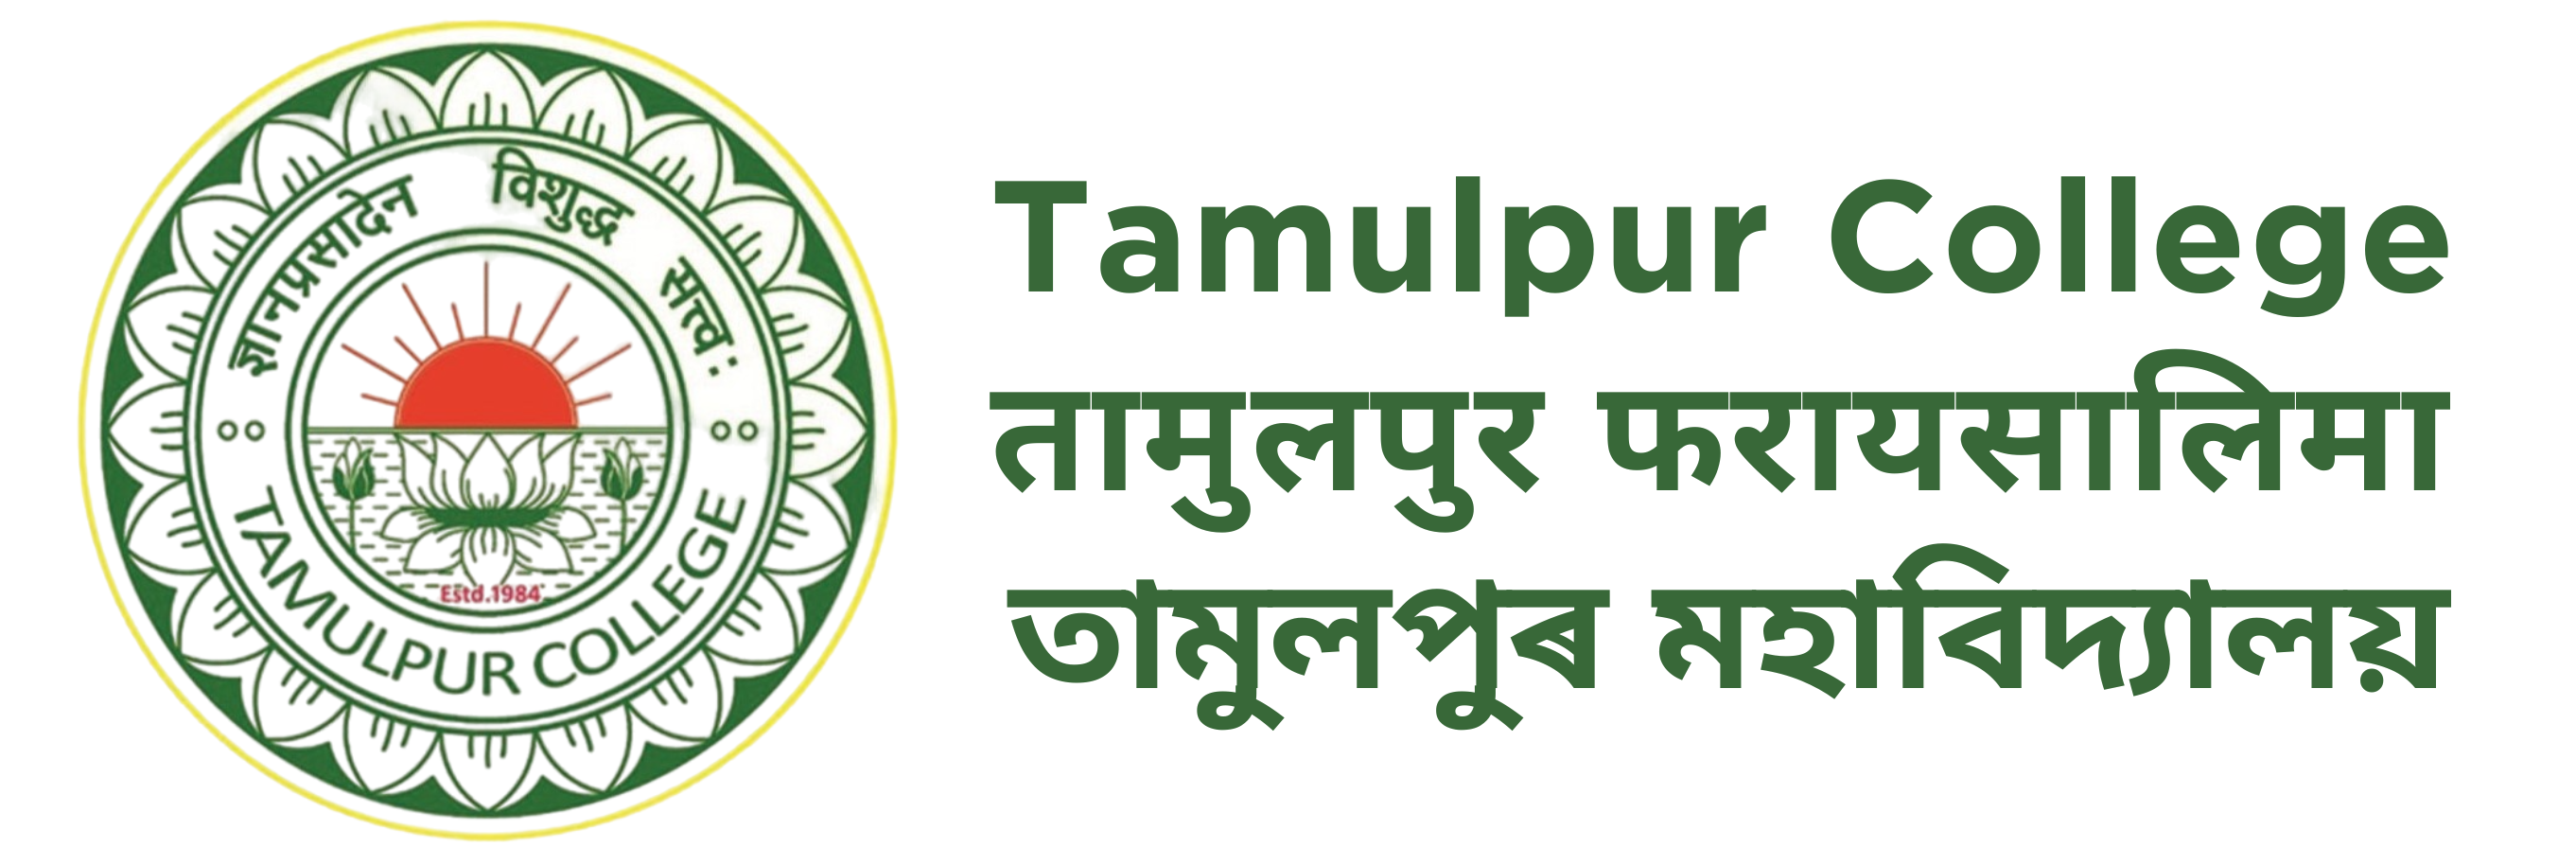 Tamulpur College